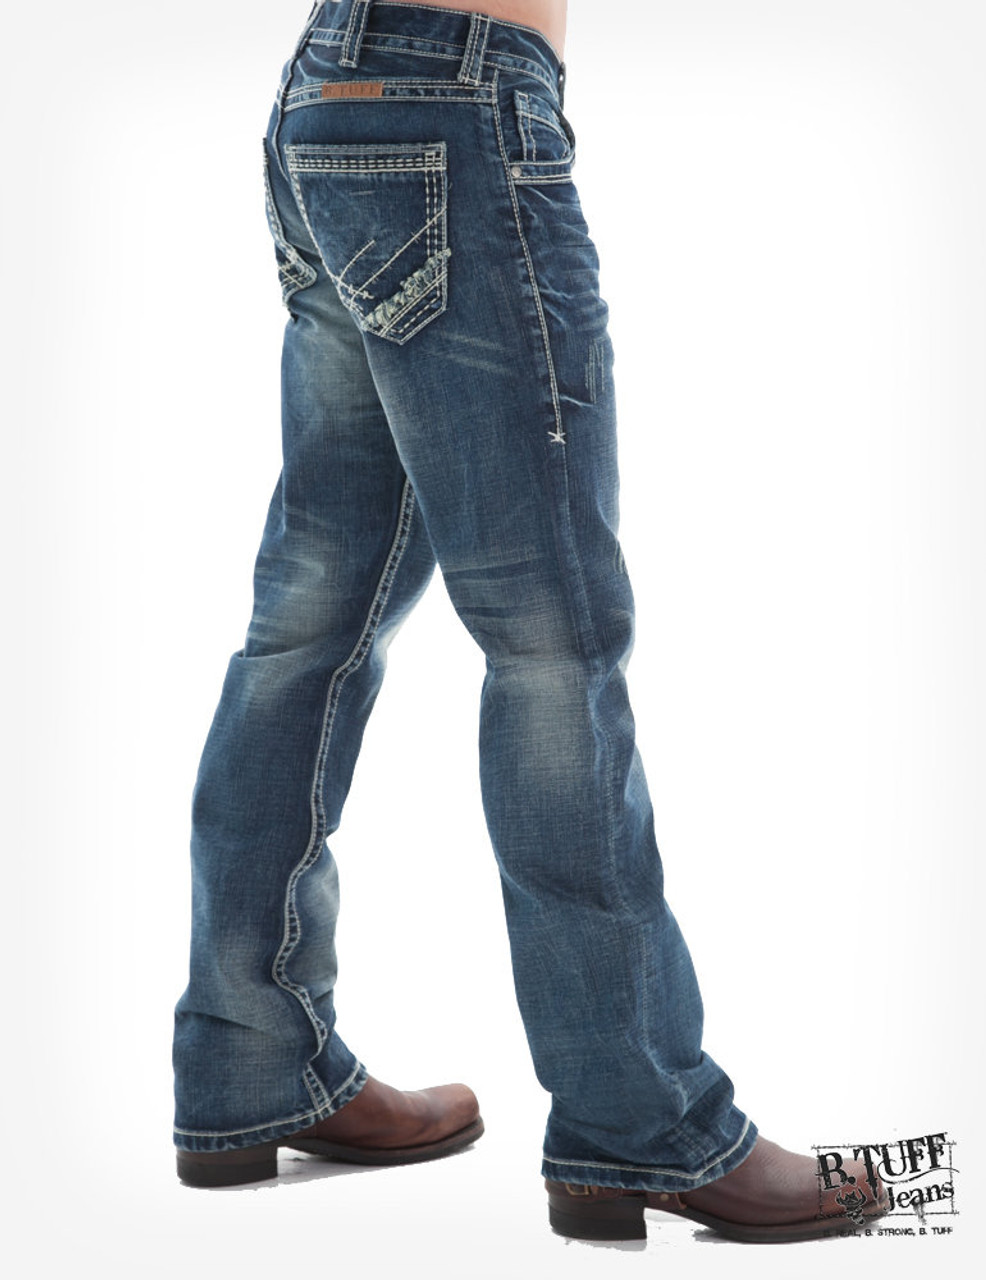 B Tuff Men's Jeans - Torque - Billy's Western Wear